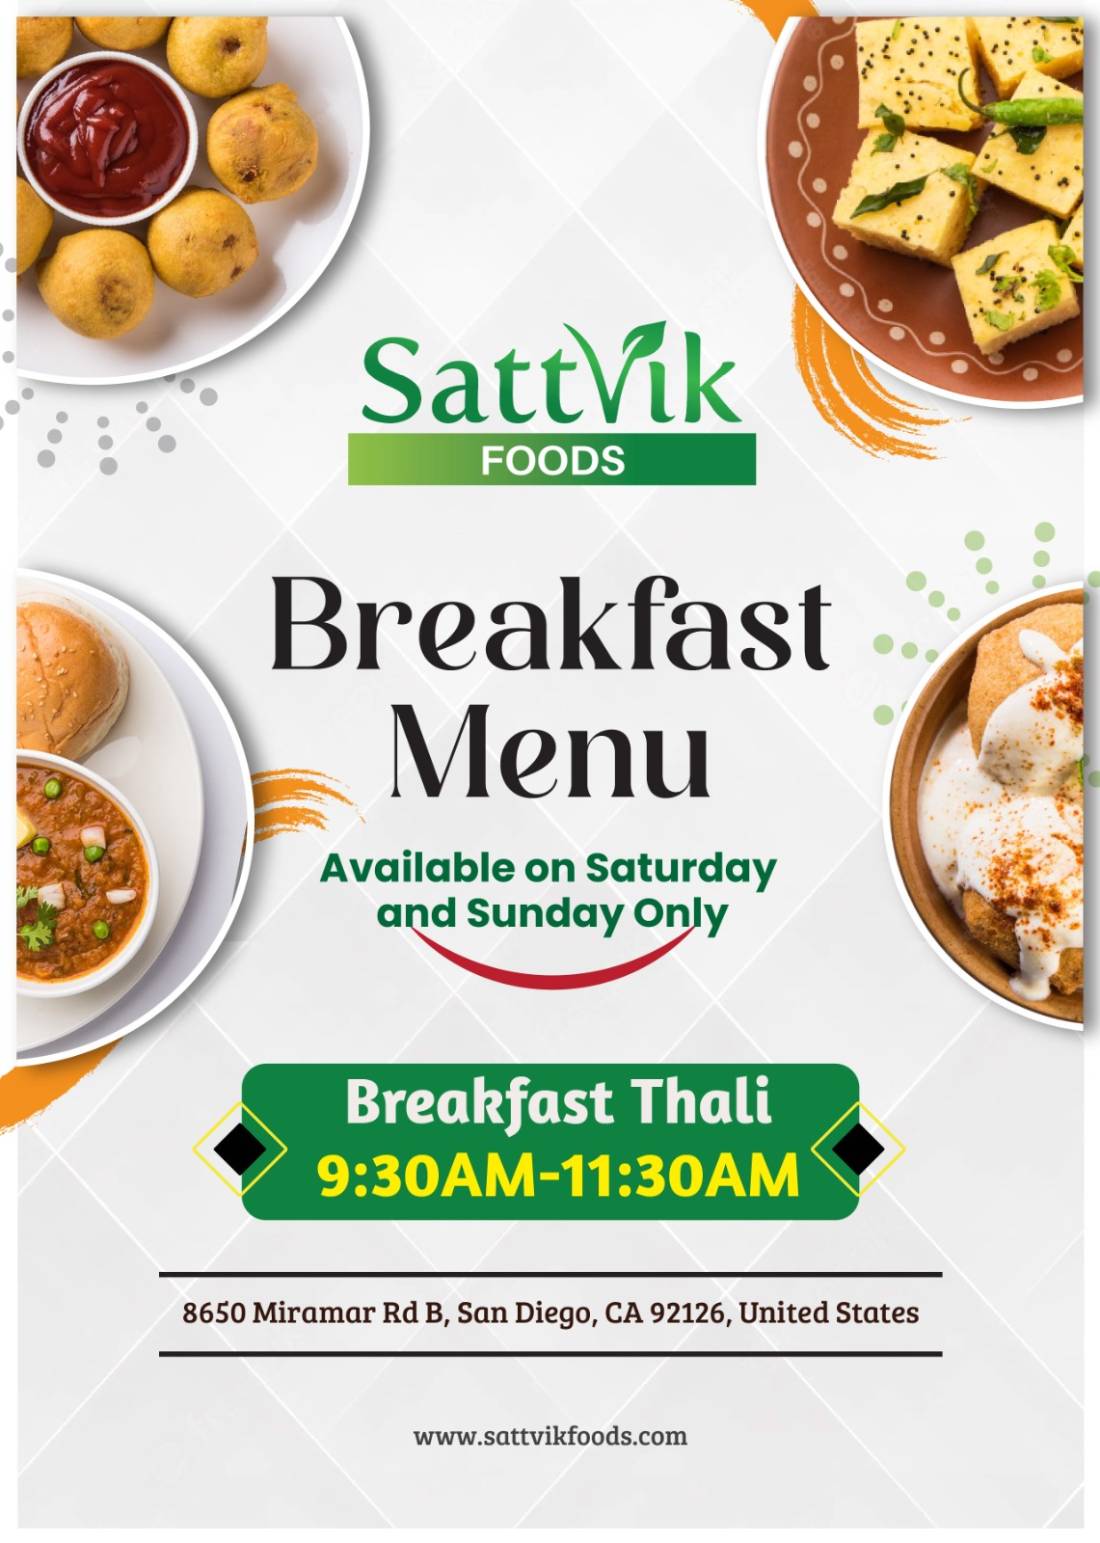 Sattvik Breakfast Thali